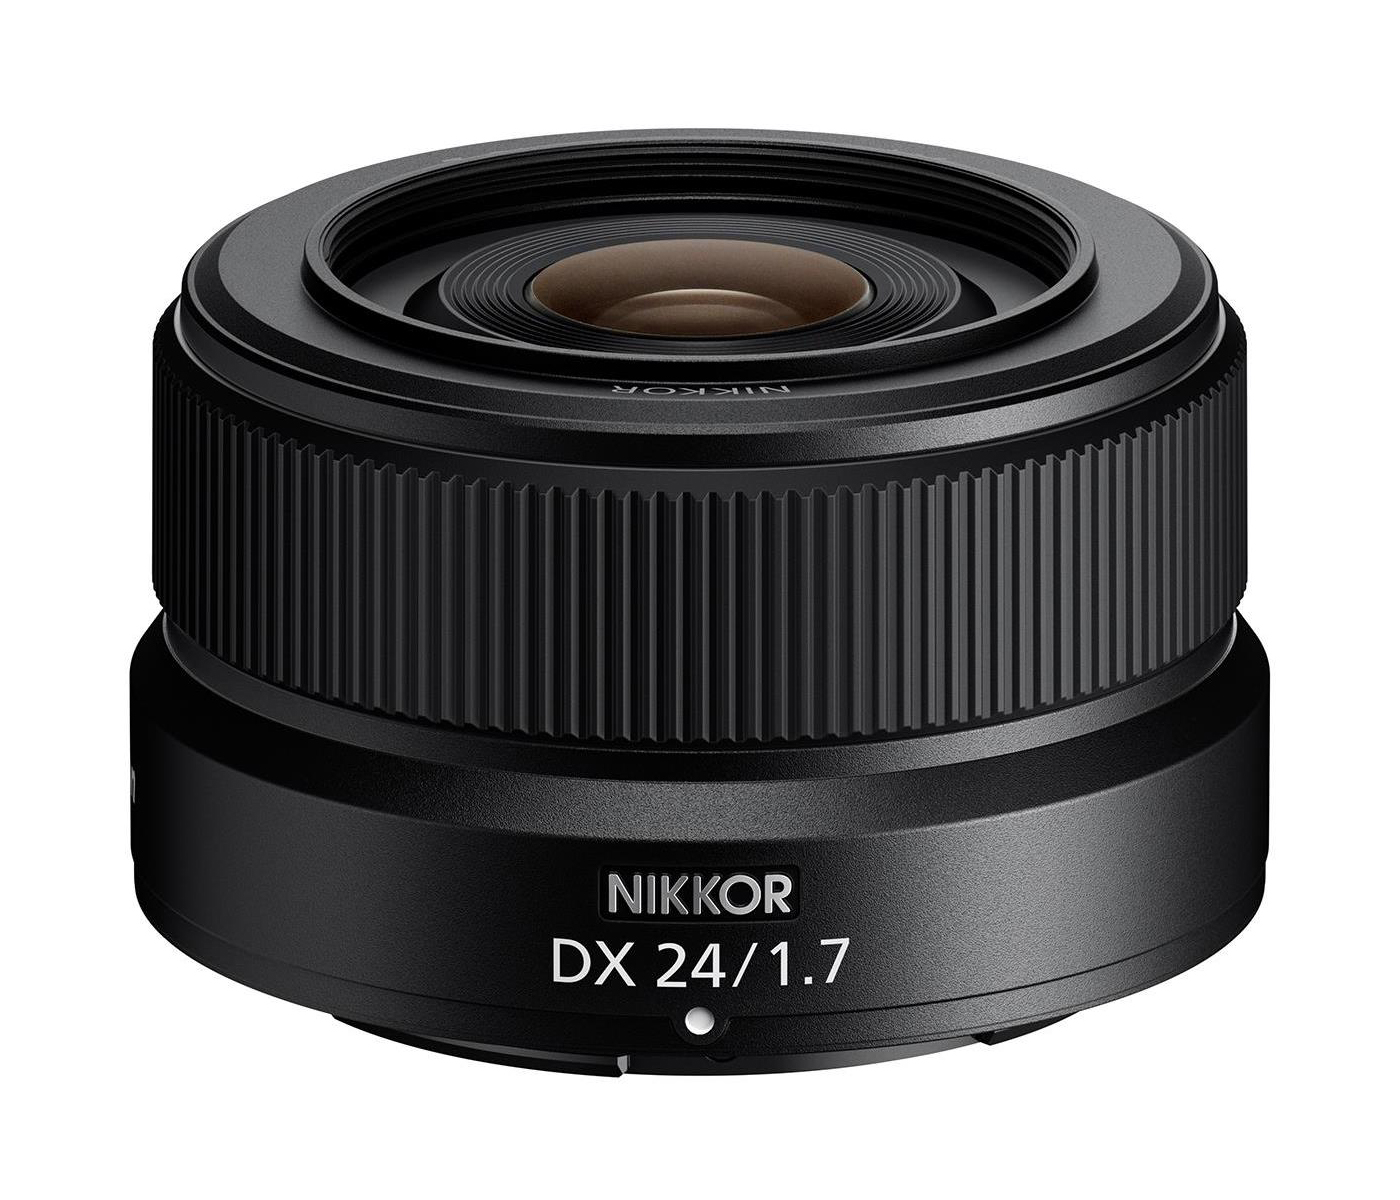 ニコンがNIKKOR Z DX 24mm f/1.7レンズを発表 | CineD